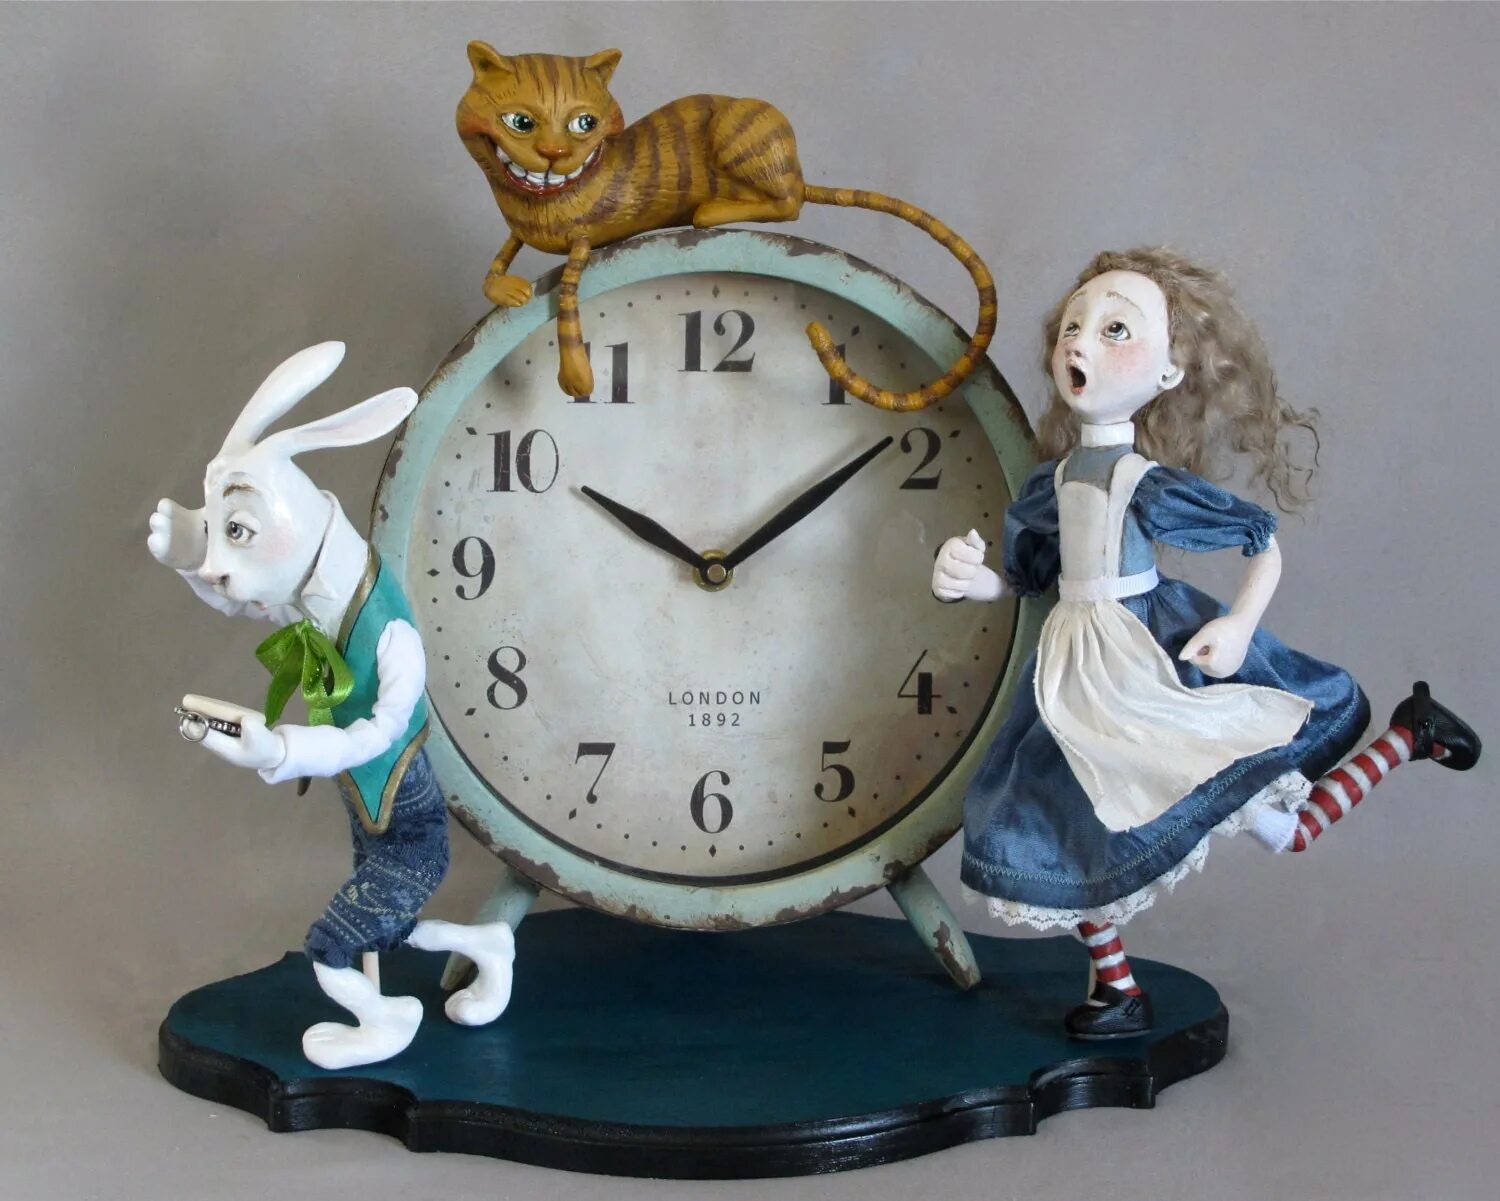 Часы Алиса в стране чудес. Часы из Алисы в стране чудес. Скульптура Алиса в стране чудес. Часы Алиса в стране чудес картинки. Часы алиса отзывы